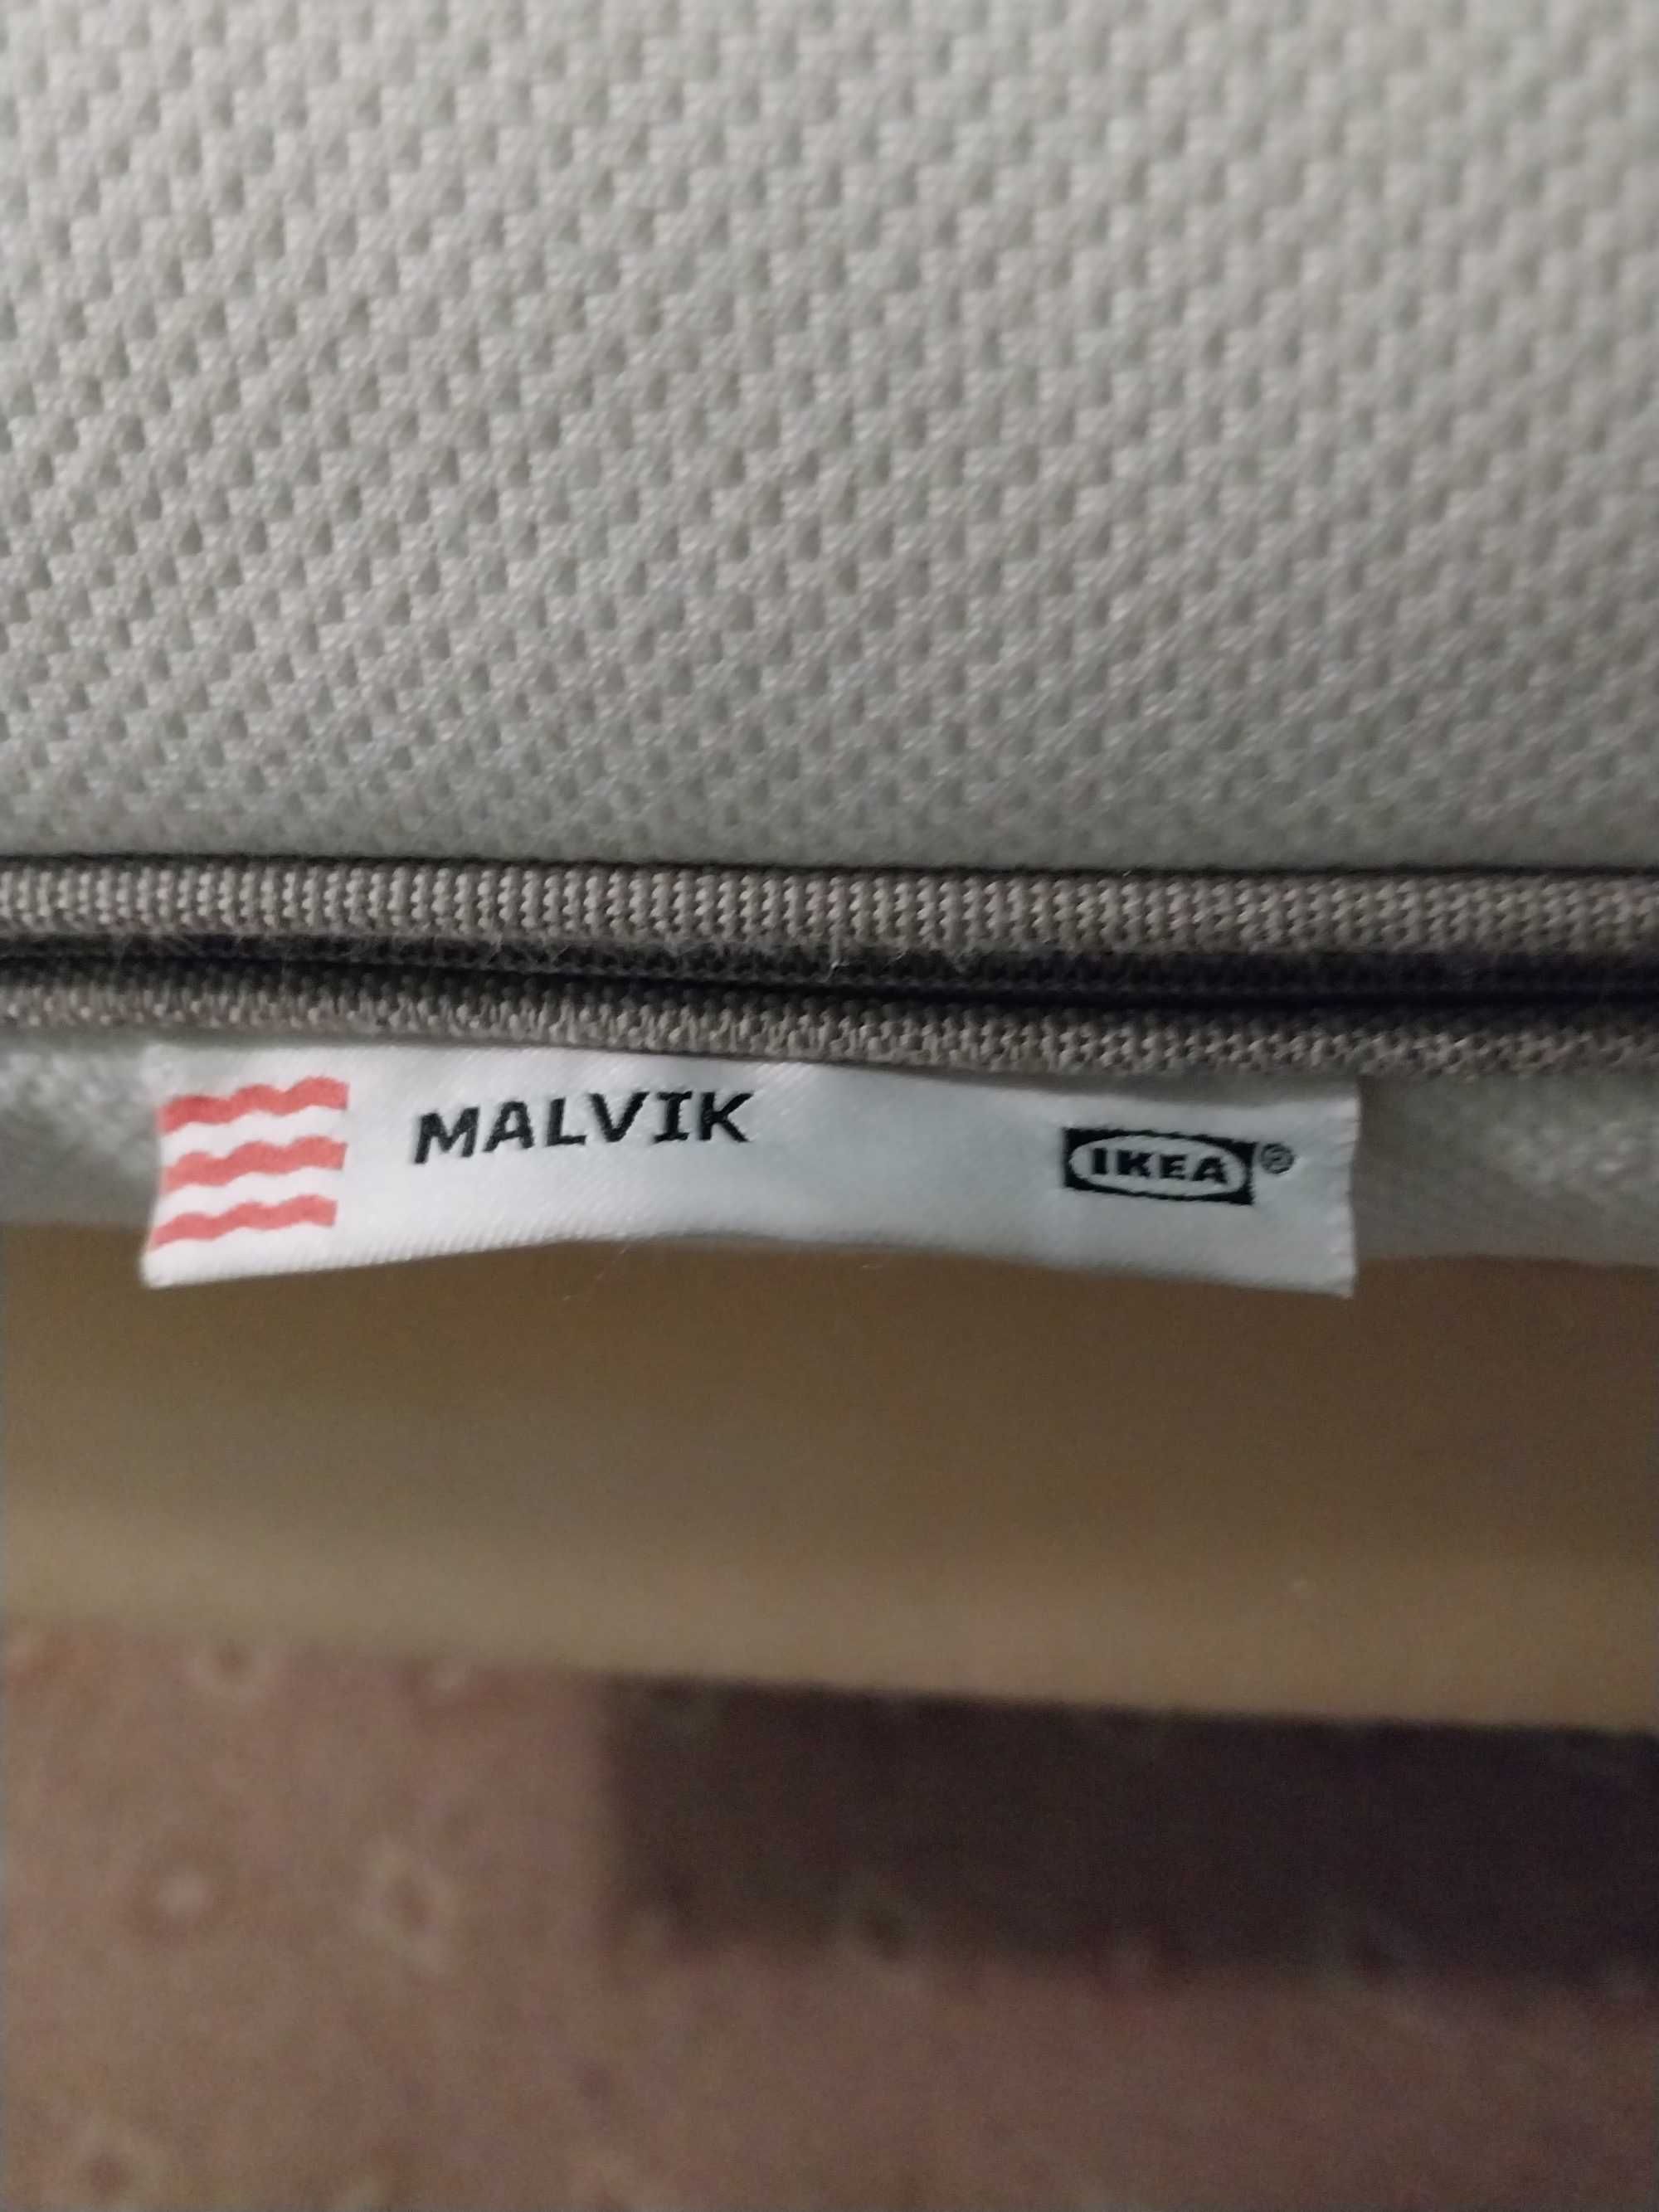 Матрац IKEA Malvik із пінополіуретану.